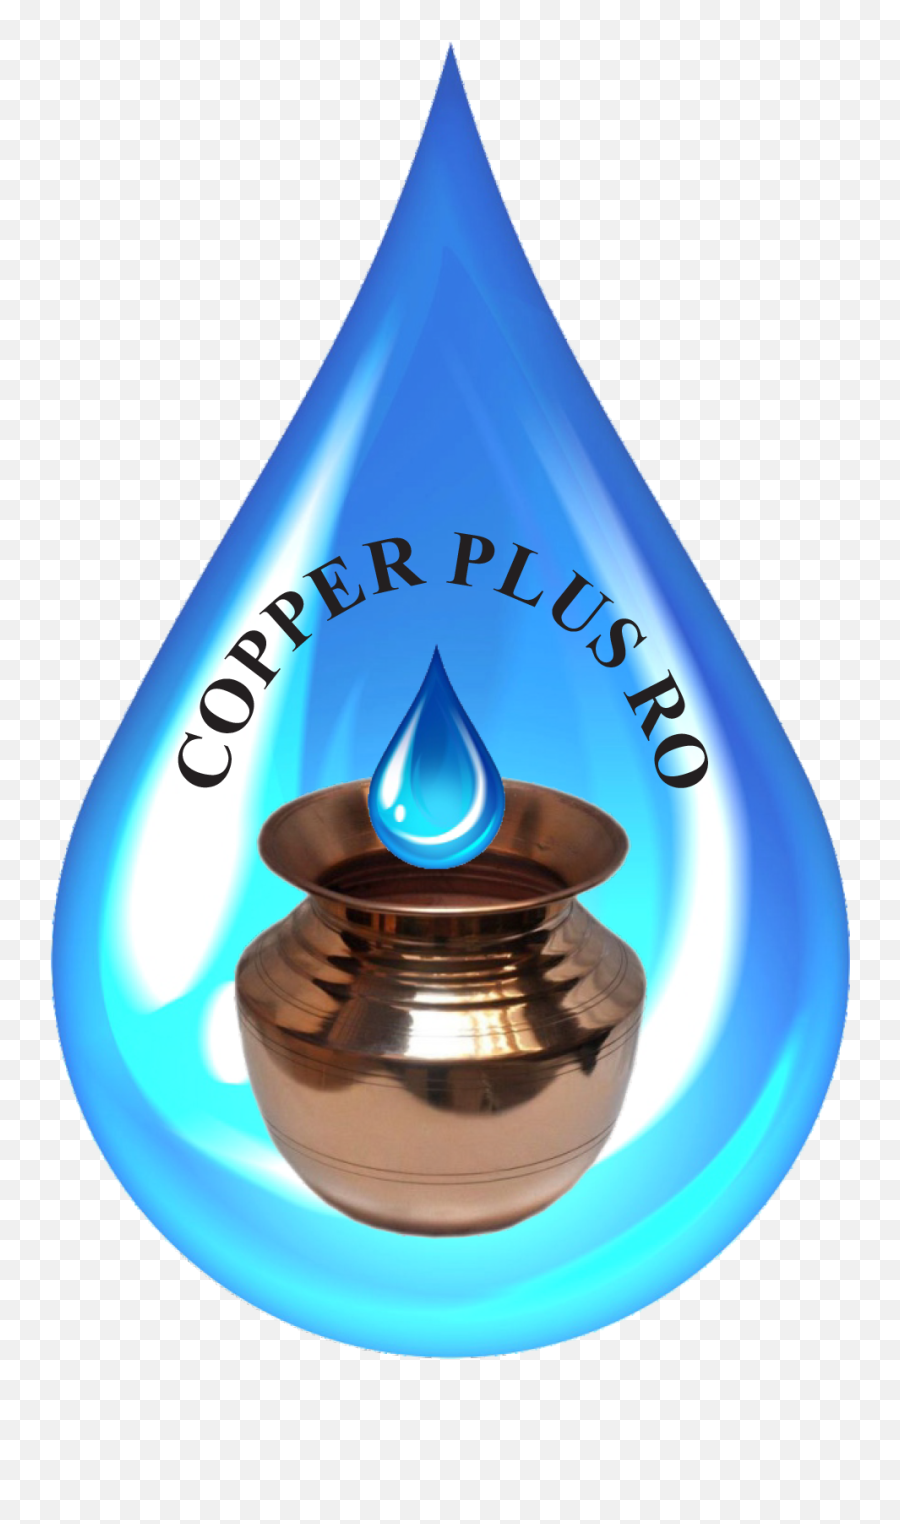 Copper Plus Ro Pvt Ltd Png Plague Inc Icon